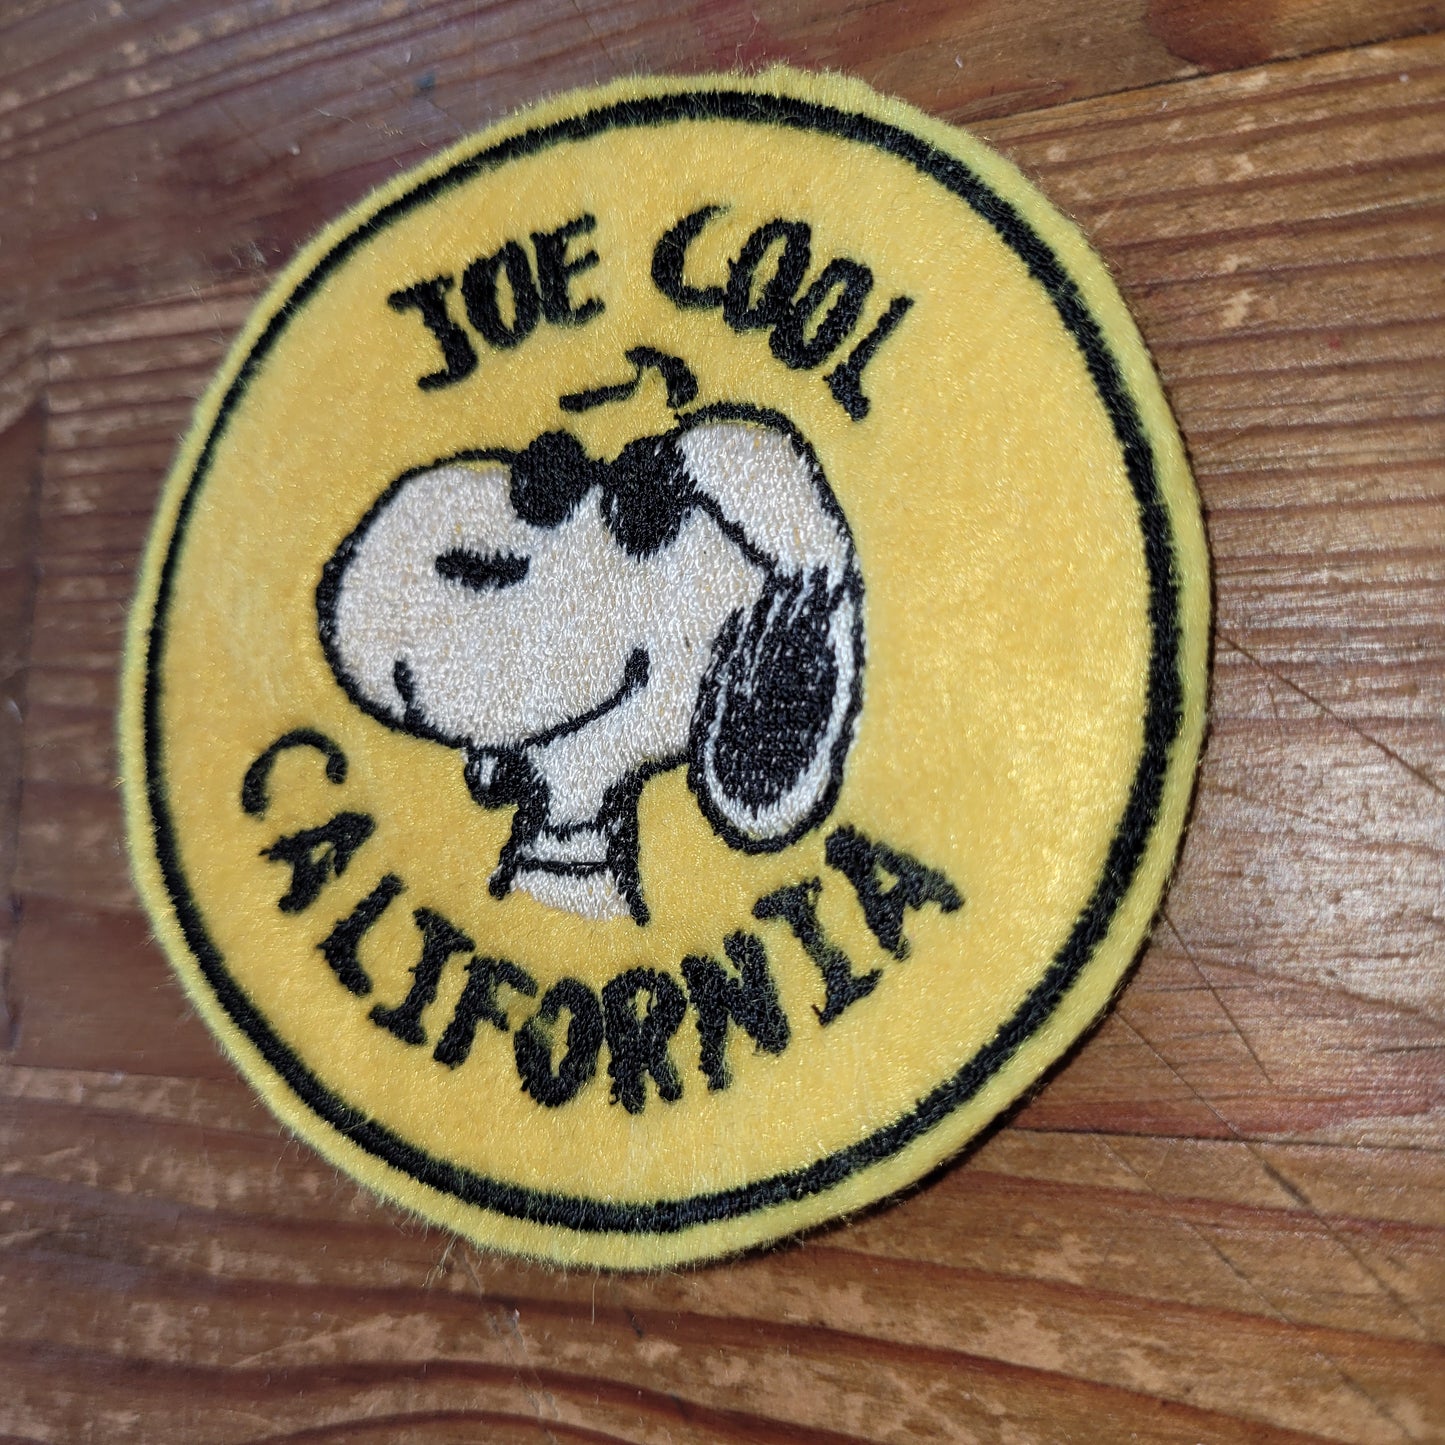 Snoopy "Joe  Cool Caliornia"